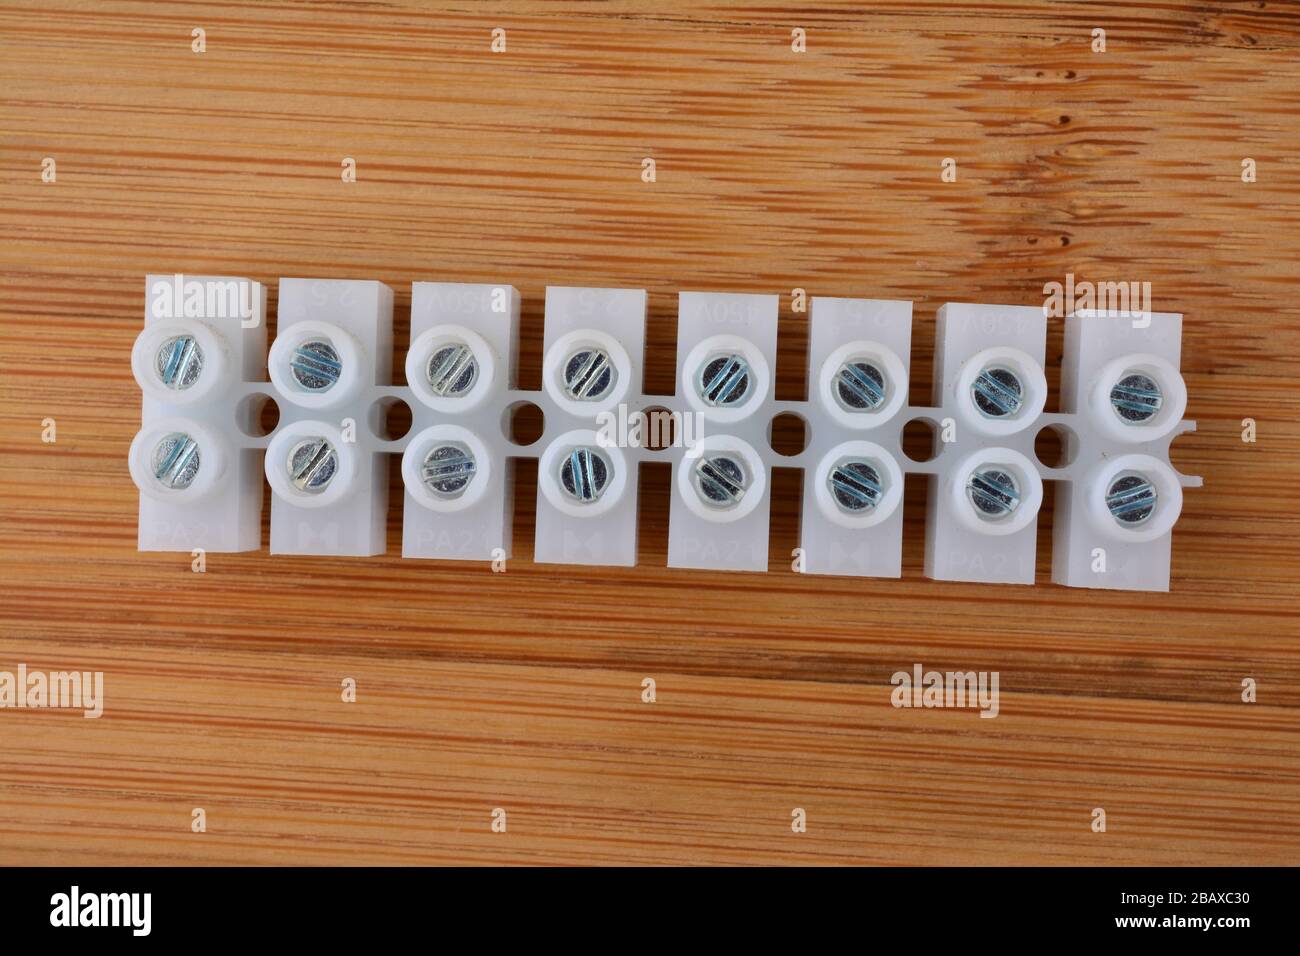 Connecteurs électriques en plastique blanc, pinces pour blocs de jonction pour câbles électriques sur fond en bois Banque D'Images